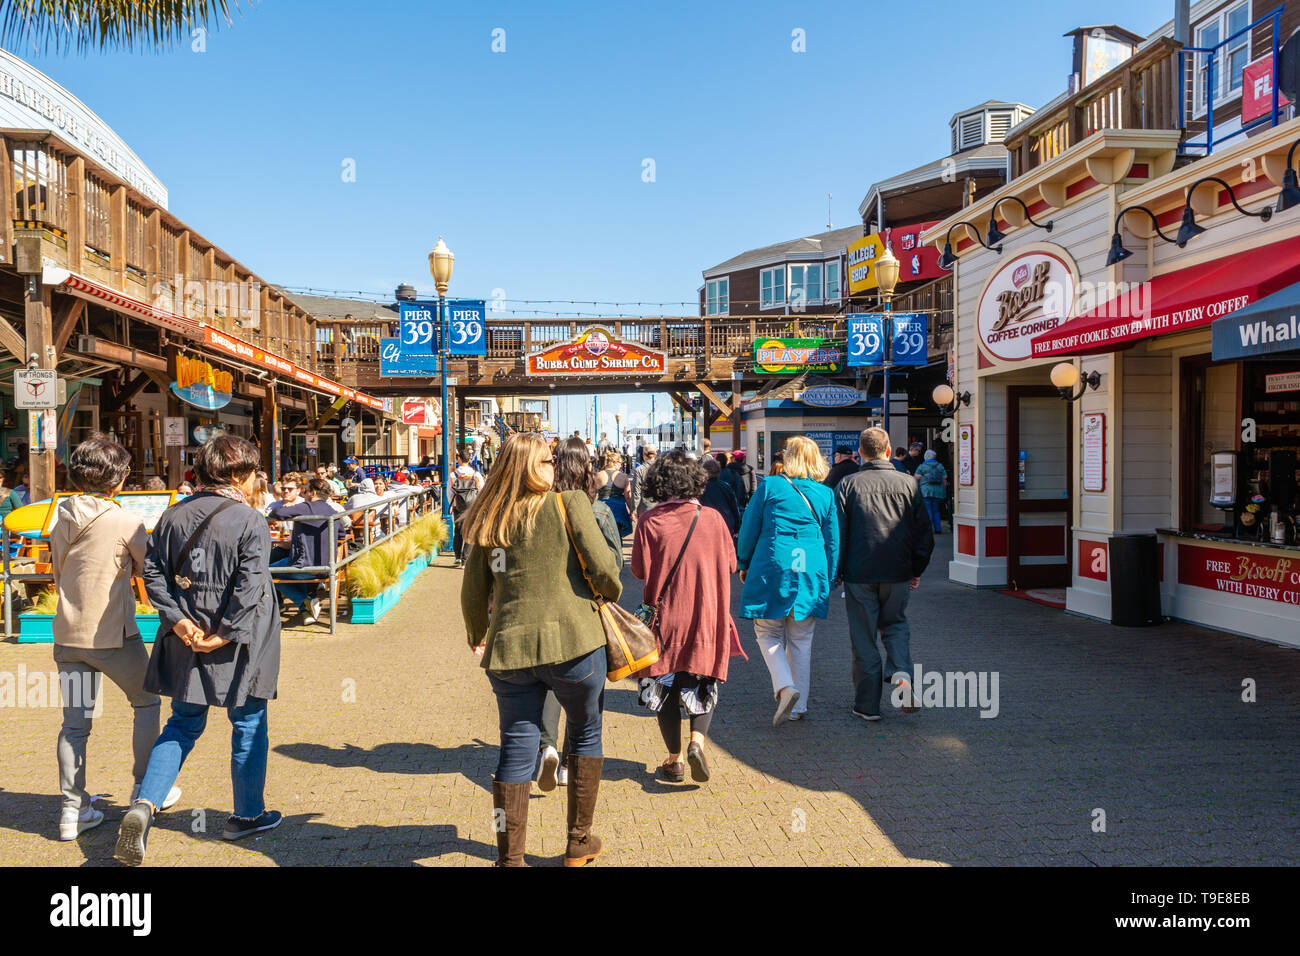 SAN FRANCISCO, USA - 30. März 2019: Touristen am Pier 39, Fisherman's Wharf. Pier 39 ist ein berühmtes Einkaufszentrum und beliebte Touristenattraktion in S Stockfoto